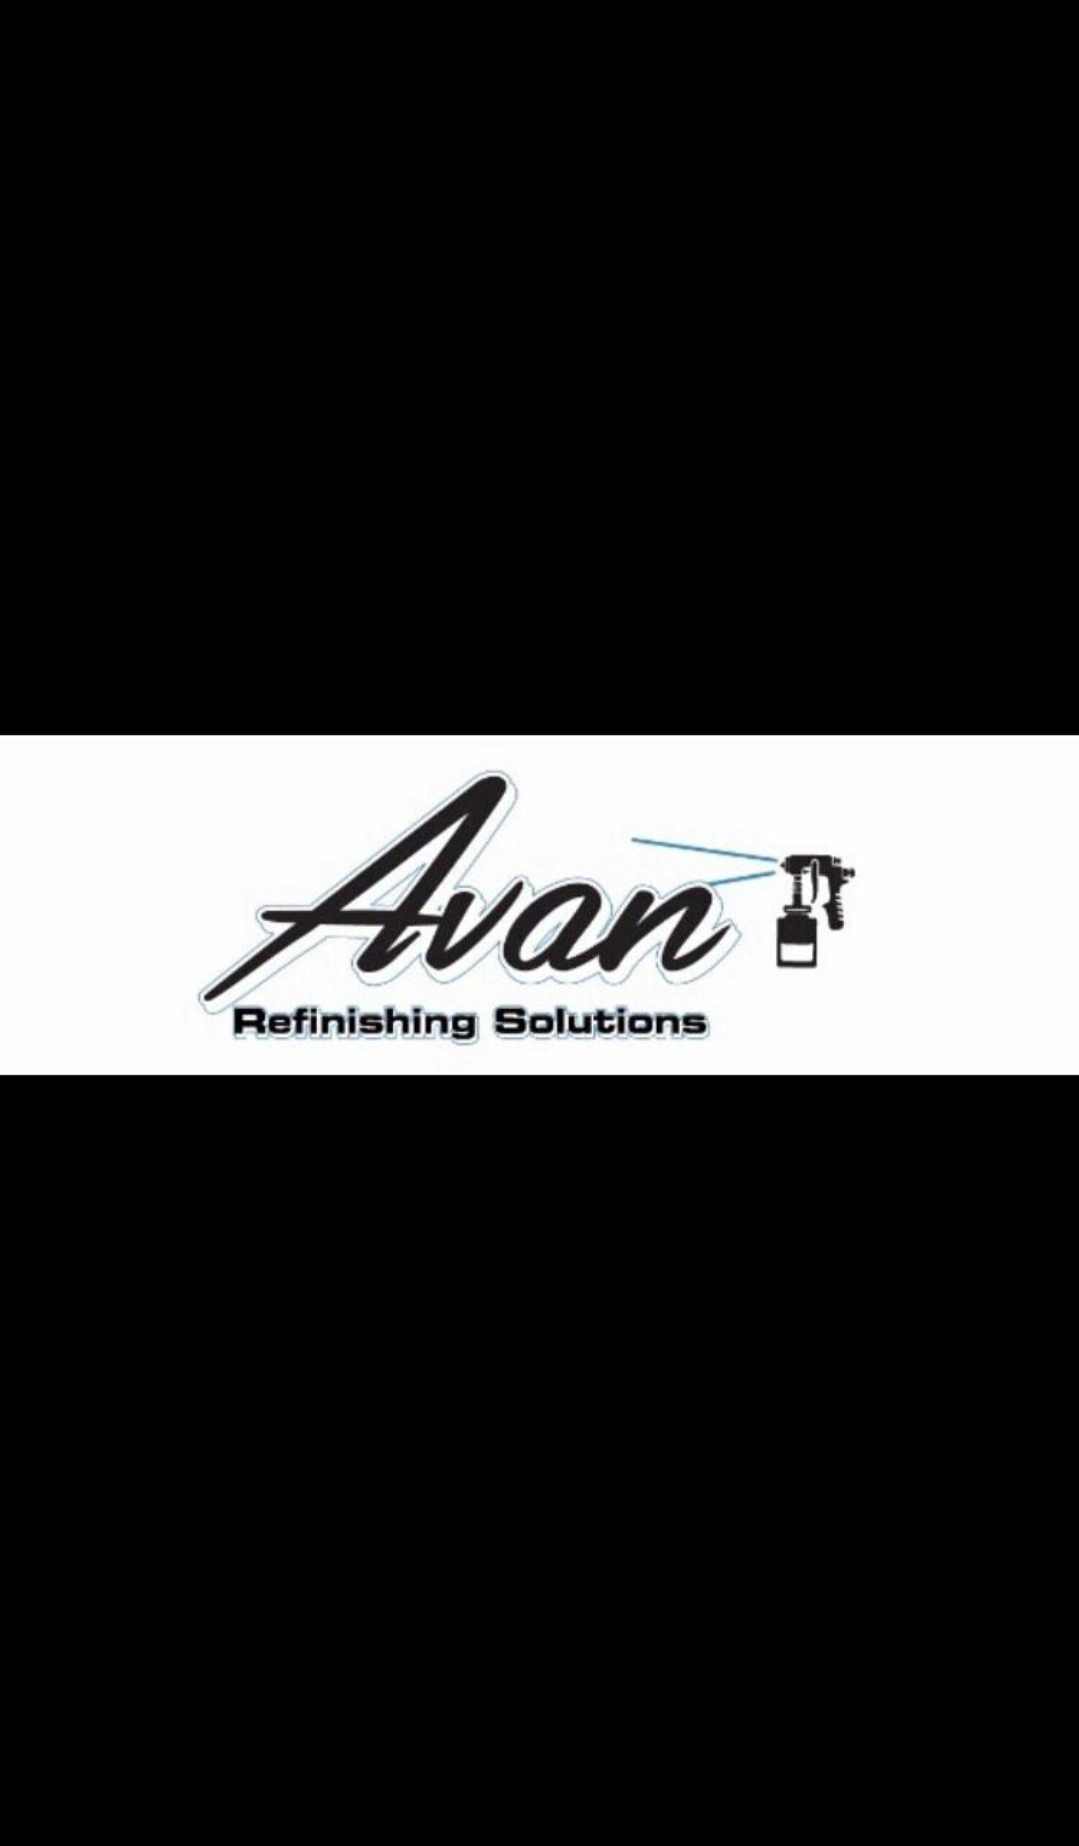 Avan Refinishing Solutions - Unlicensed Contractor Logo